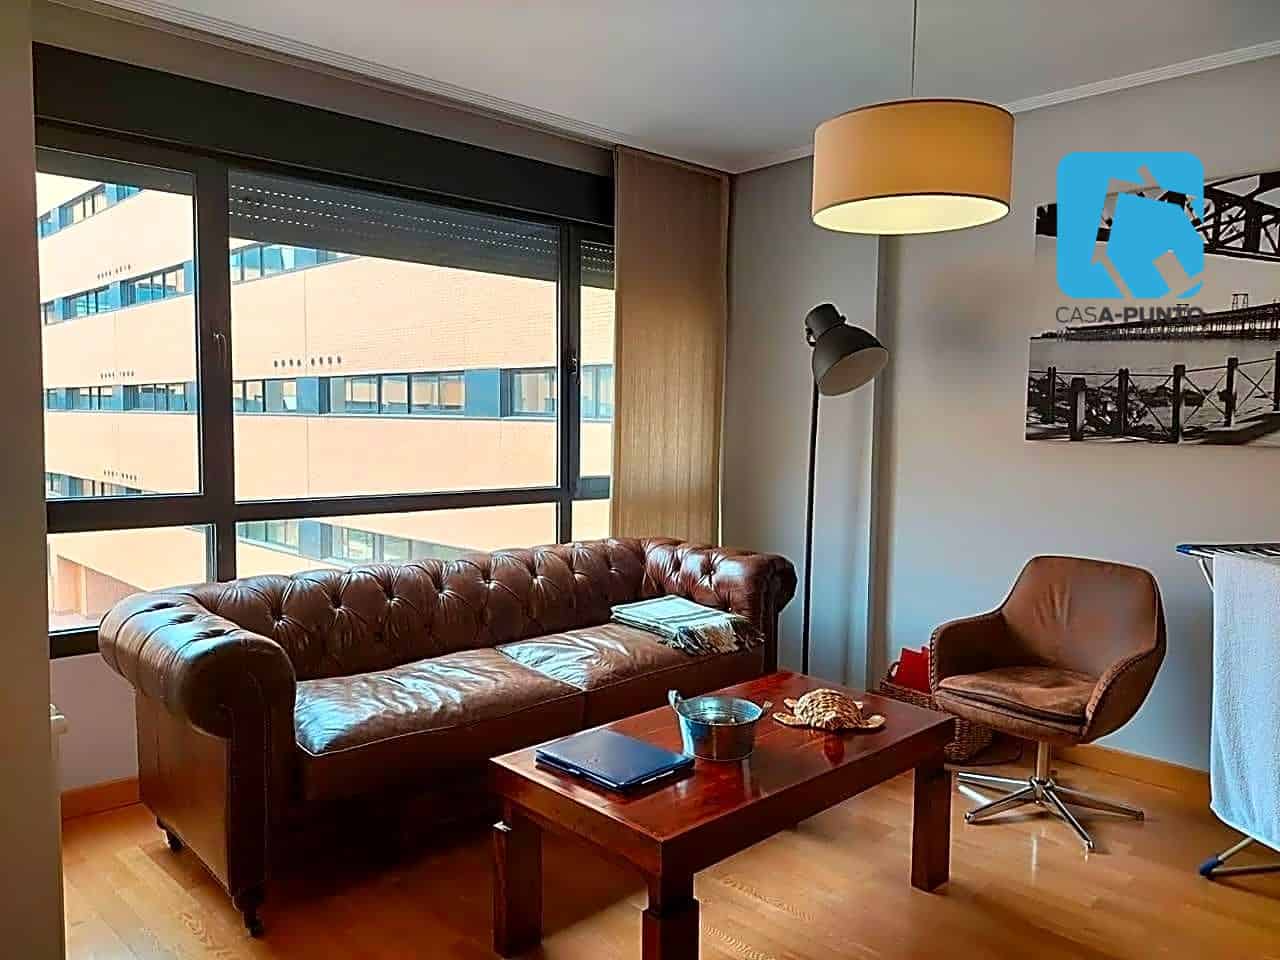 Alquiler piso en Rejas, Madrid - CASA-PUNTO